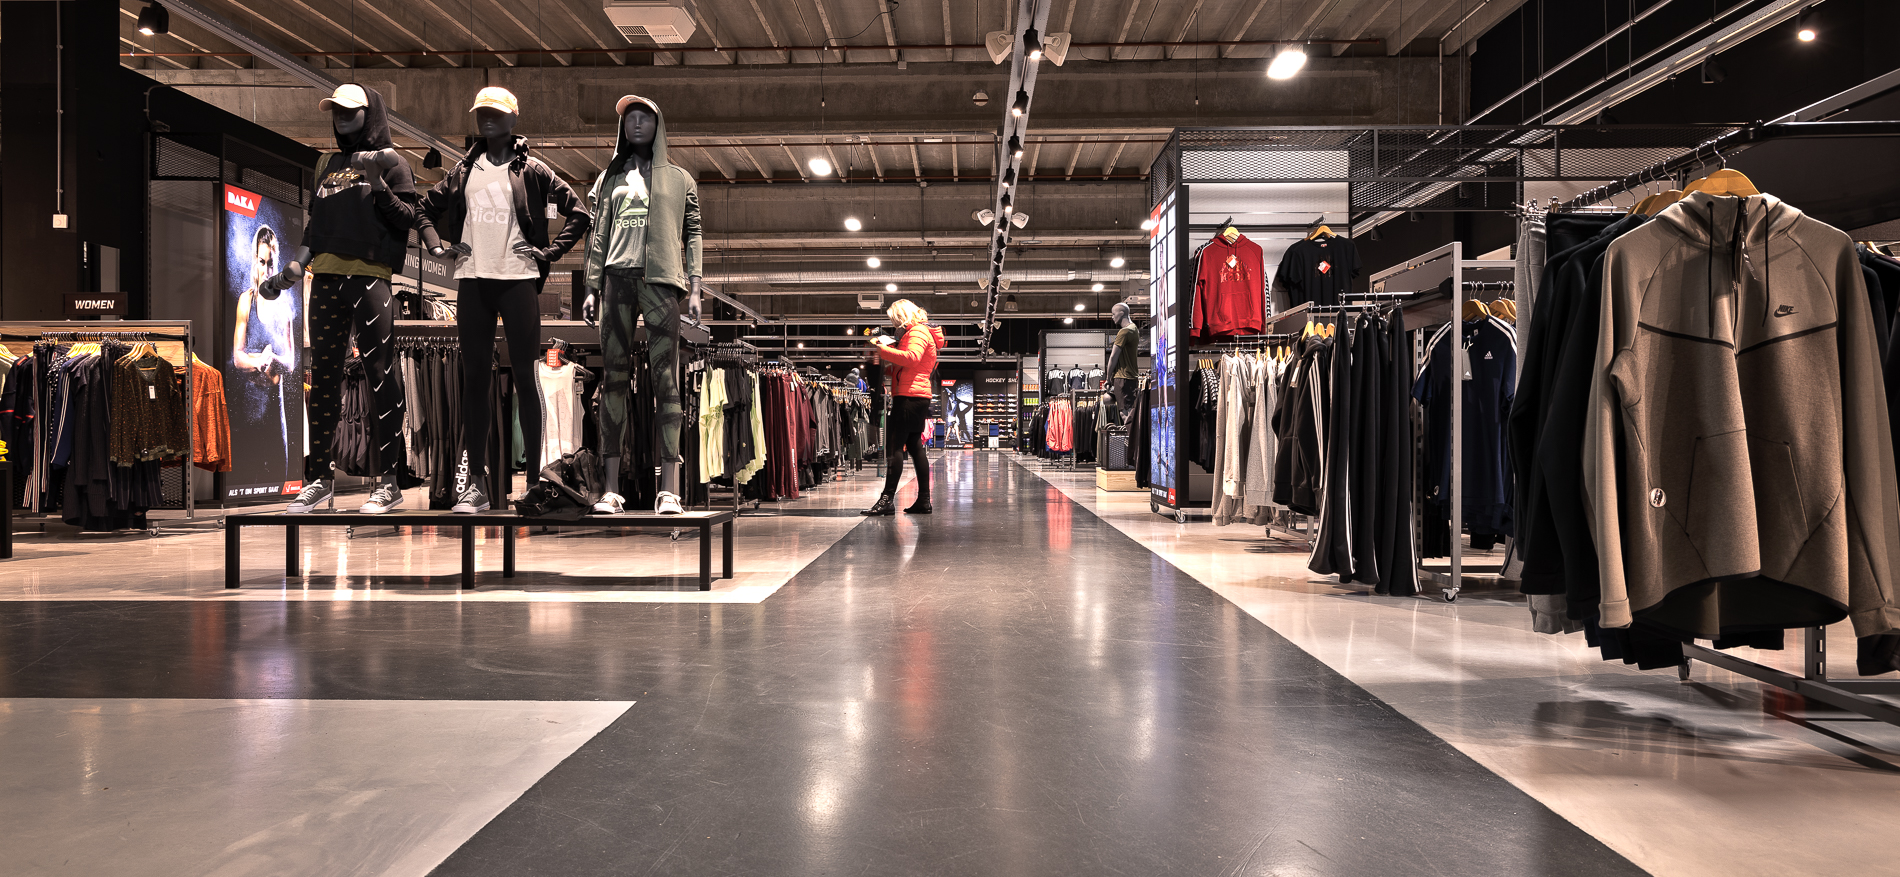 Daka Sport Apeldoorn | Winkelinrichting retailketen - 